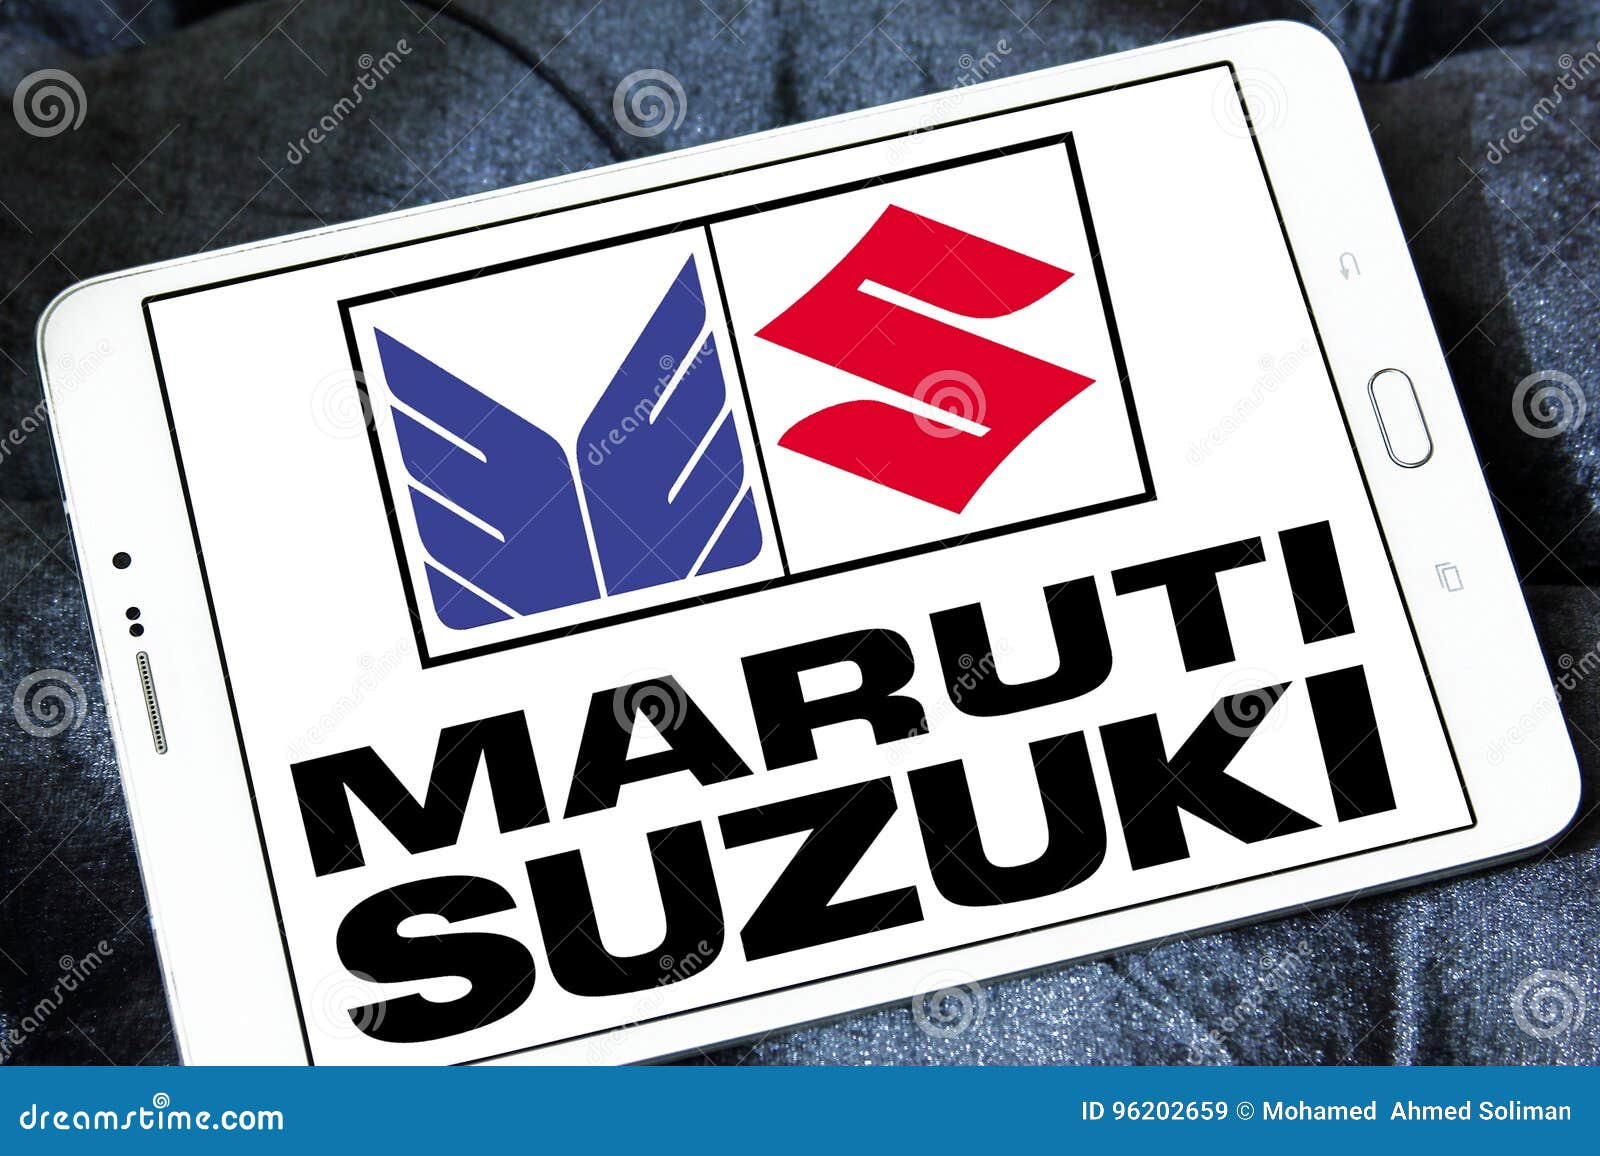 Logo-Zeichen für Suzuki redaktionelles stockbild. Bild von